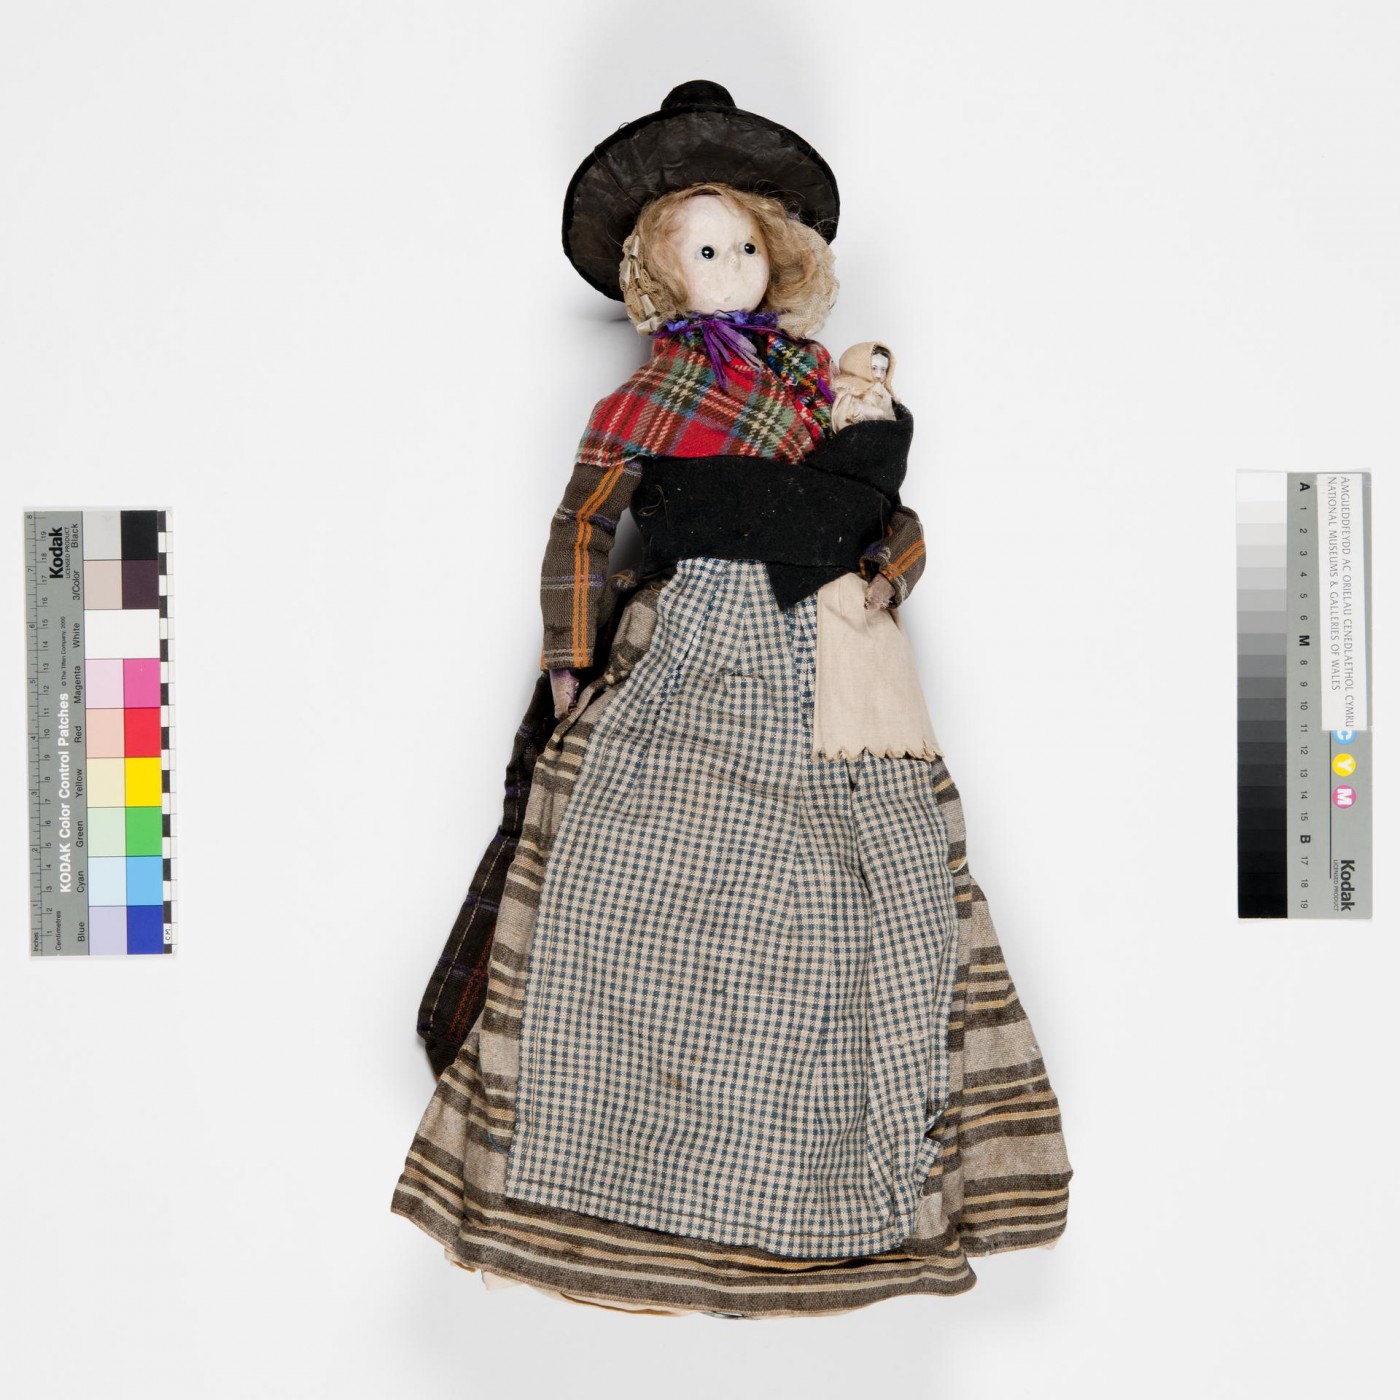 Figura 6: Bambola in costume nazionale gallese, si può vedere il bambino nascosto nel whittle. Immagine gentilmente concessa dal Museo Nazionale del Galles numero articolo 30.316